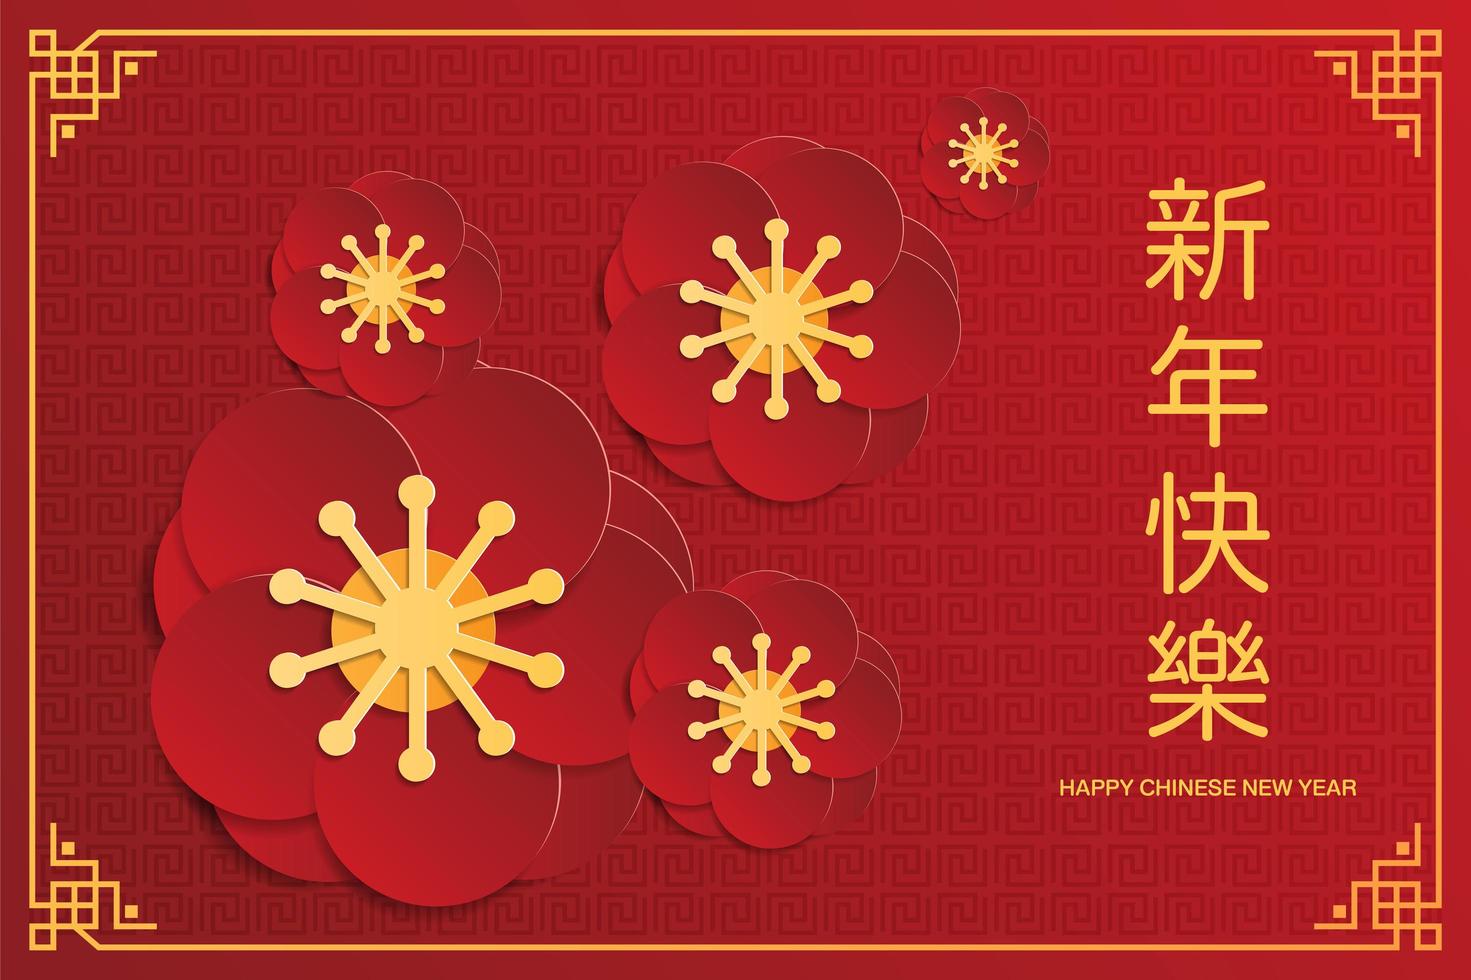 cartão de felicitações de ano novo chinês com flor de cerejeira vetor